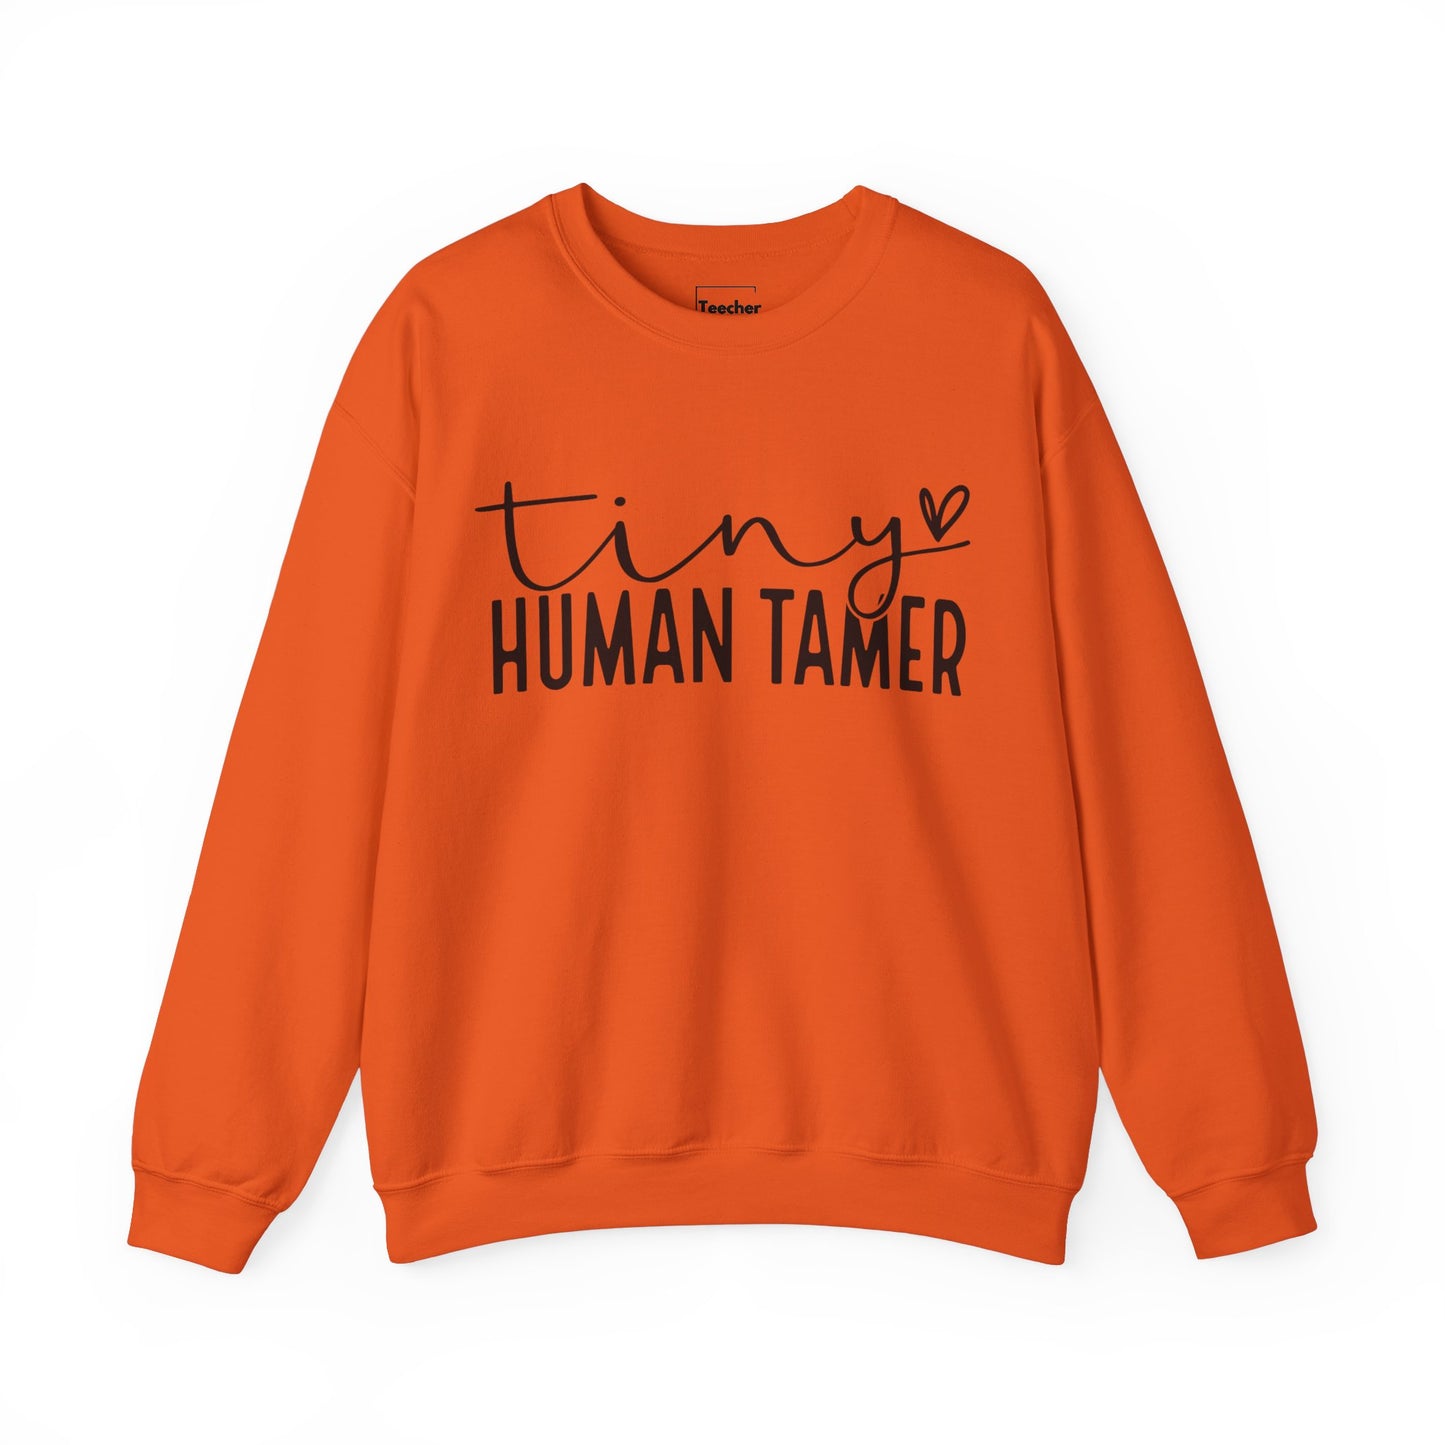 Human Tamer Sweatshirt